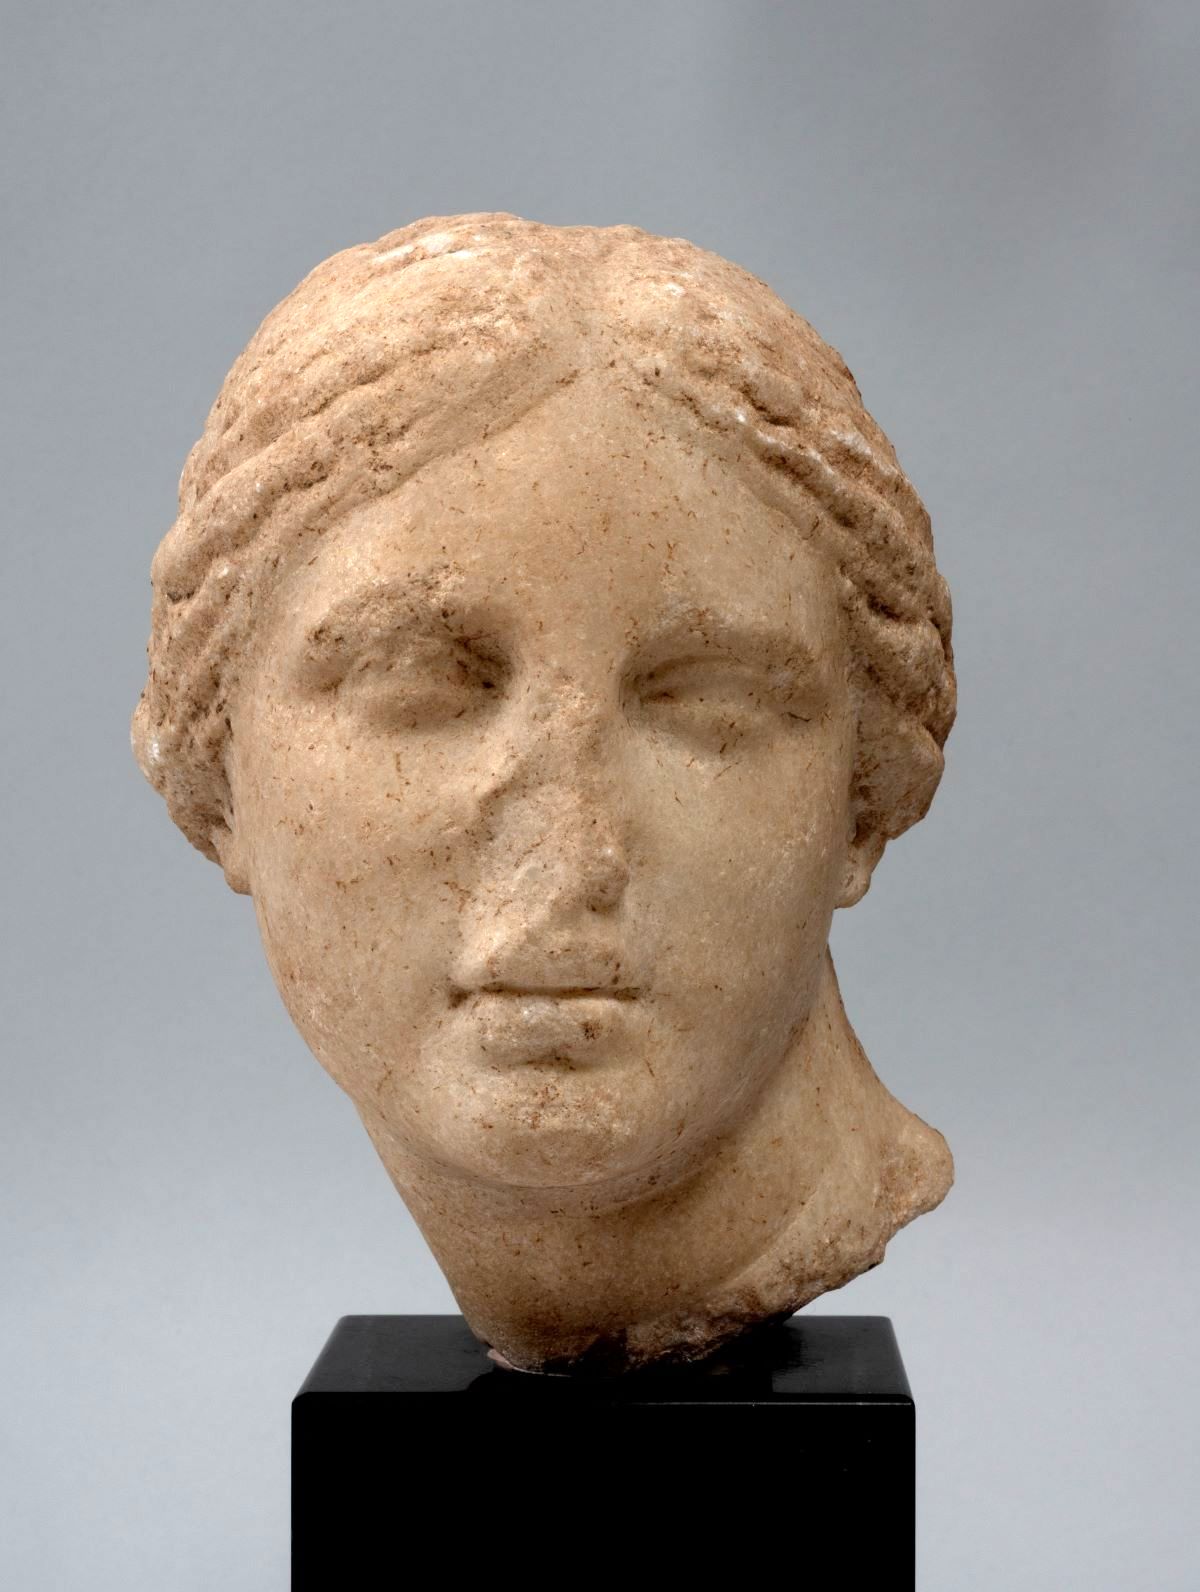 Μαρμάρινο κεφάλι Αφροδίτης (πιθανόν 2ου ή 1ου π.Χ. αιώνα)